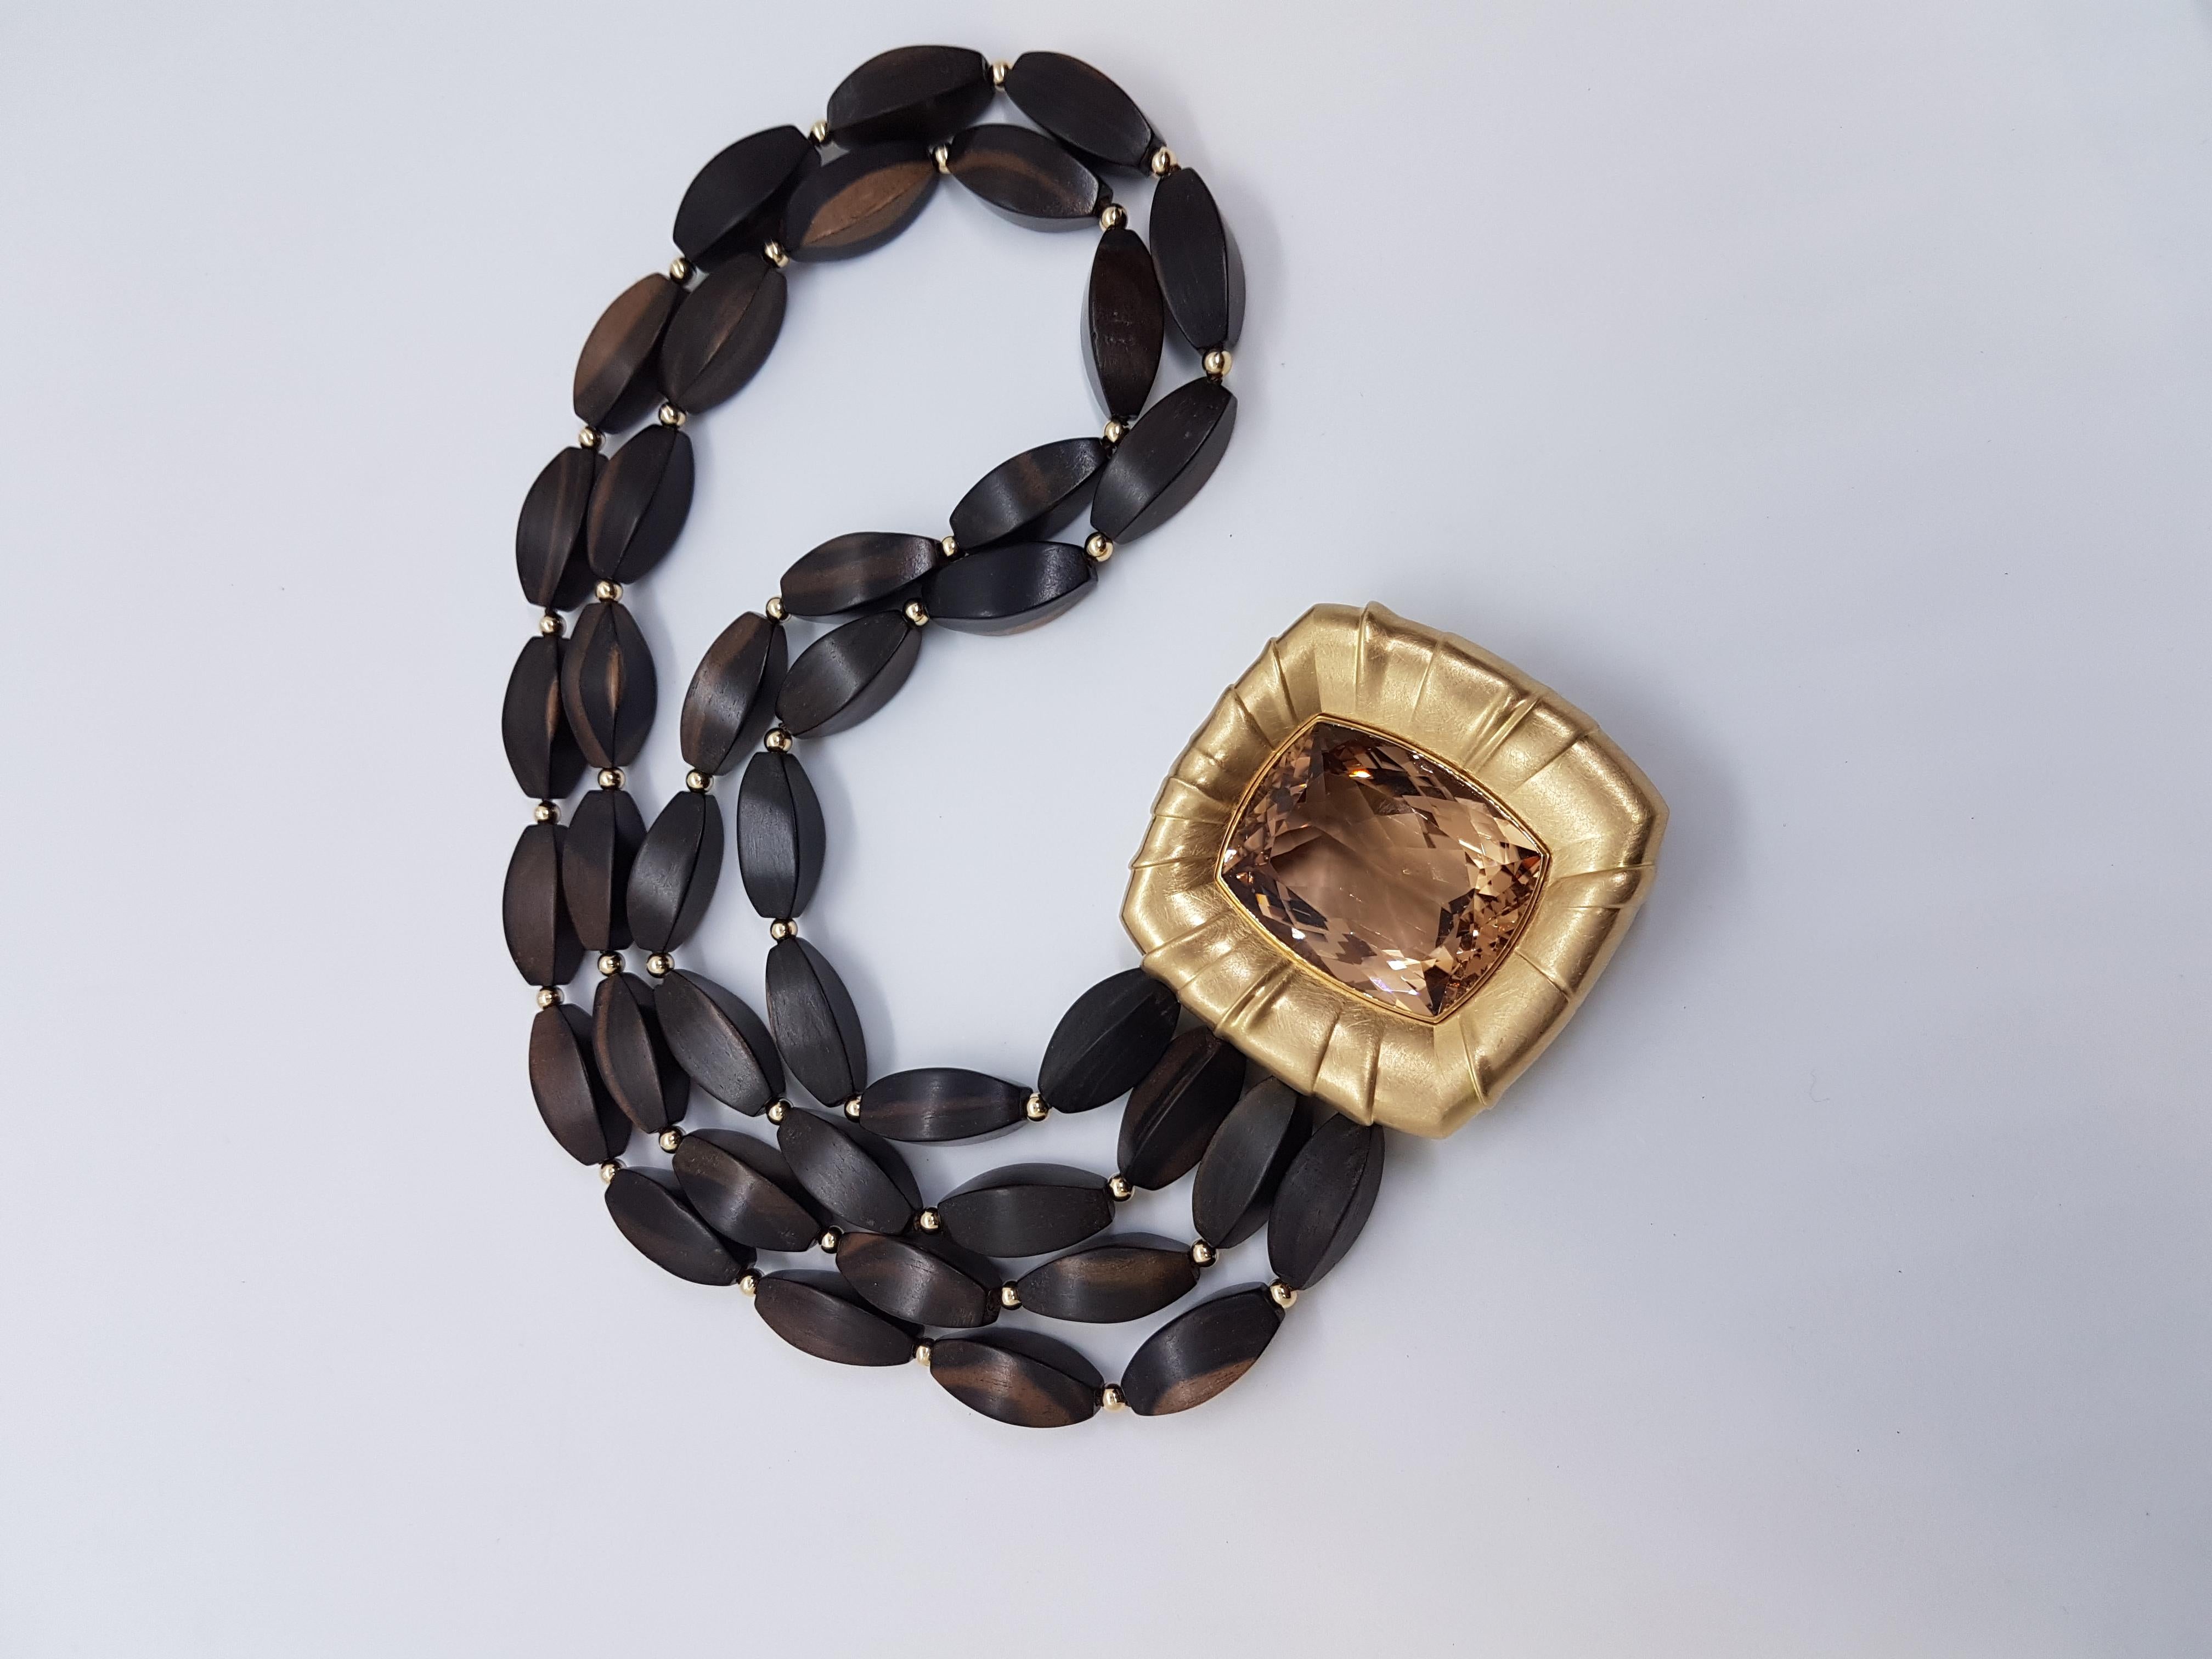 Außergewöhnliche und atemberaubende Halskette von Wagner Preziosen.
Der 108,64 Karat schwere (in dieser Qualität und Größe sehr seltene), sehr klare Morganit ist in ein 